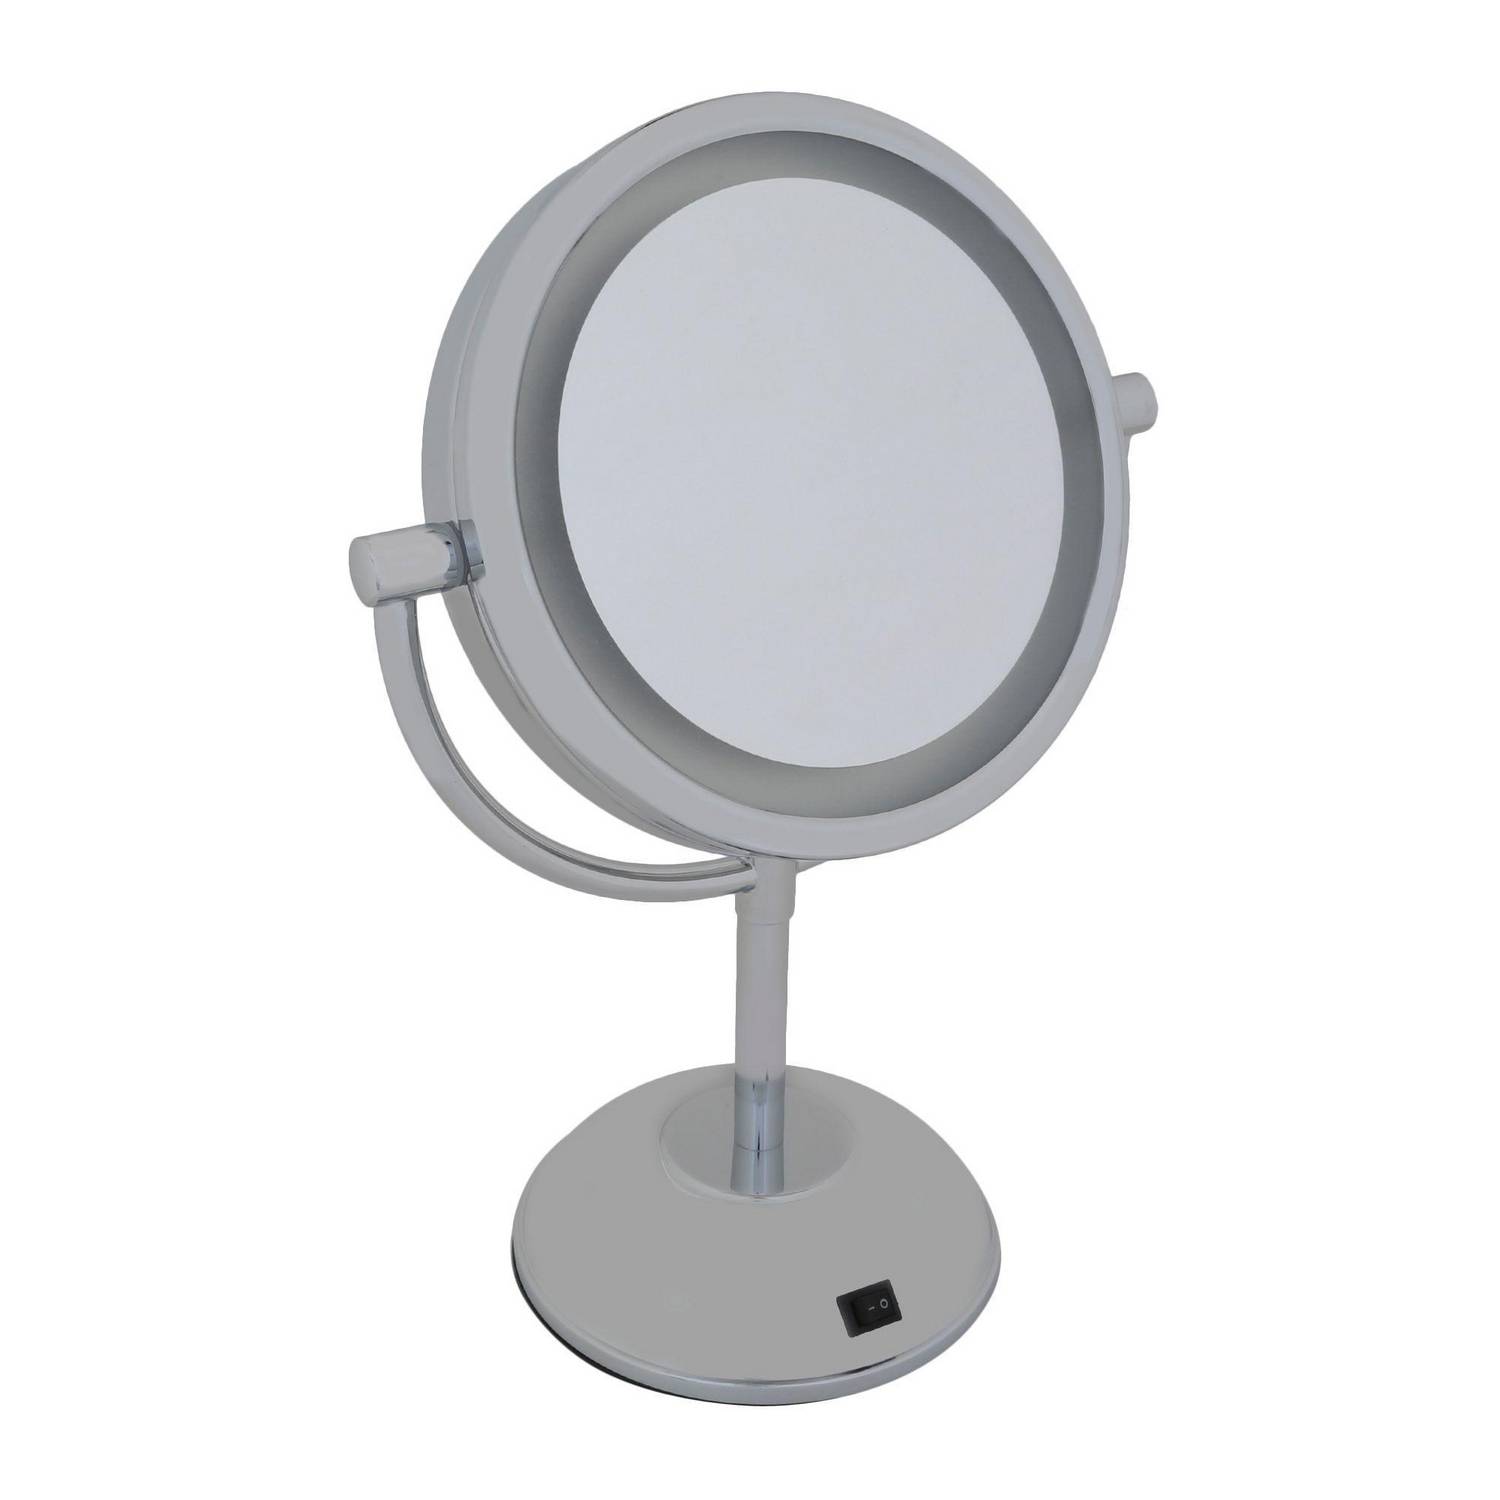 Espejo Joyero Blanco 35x153 cm